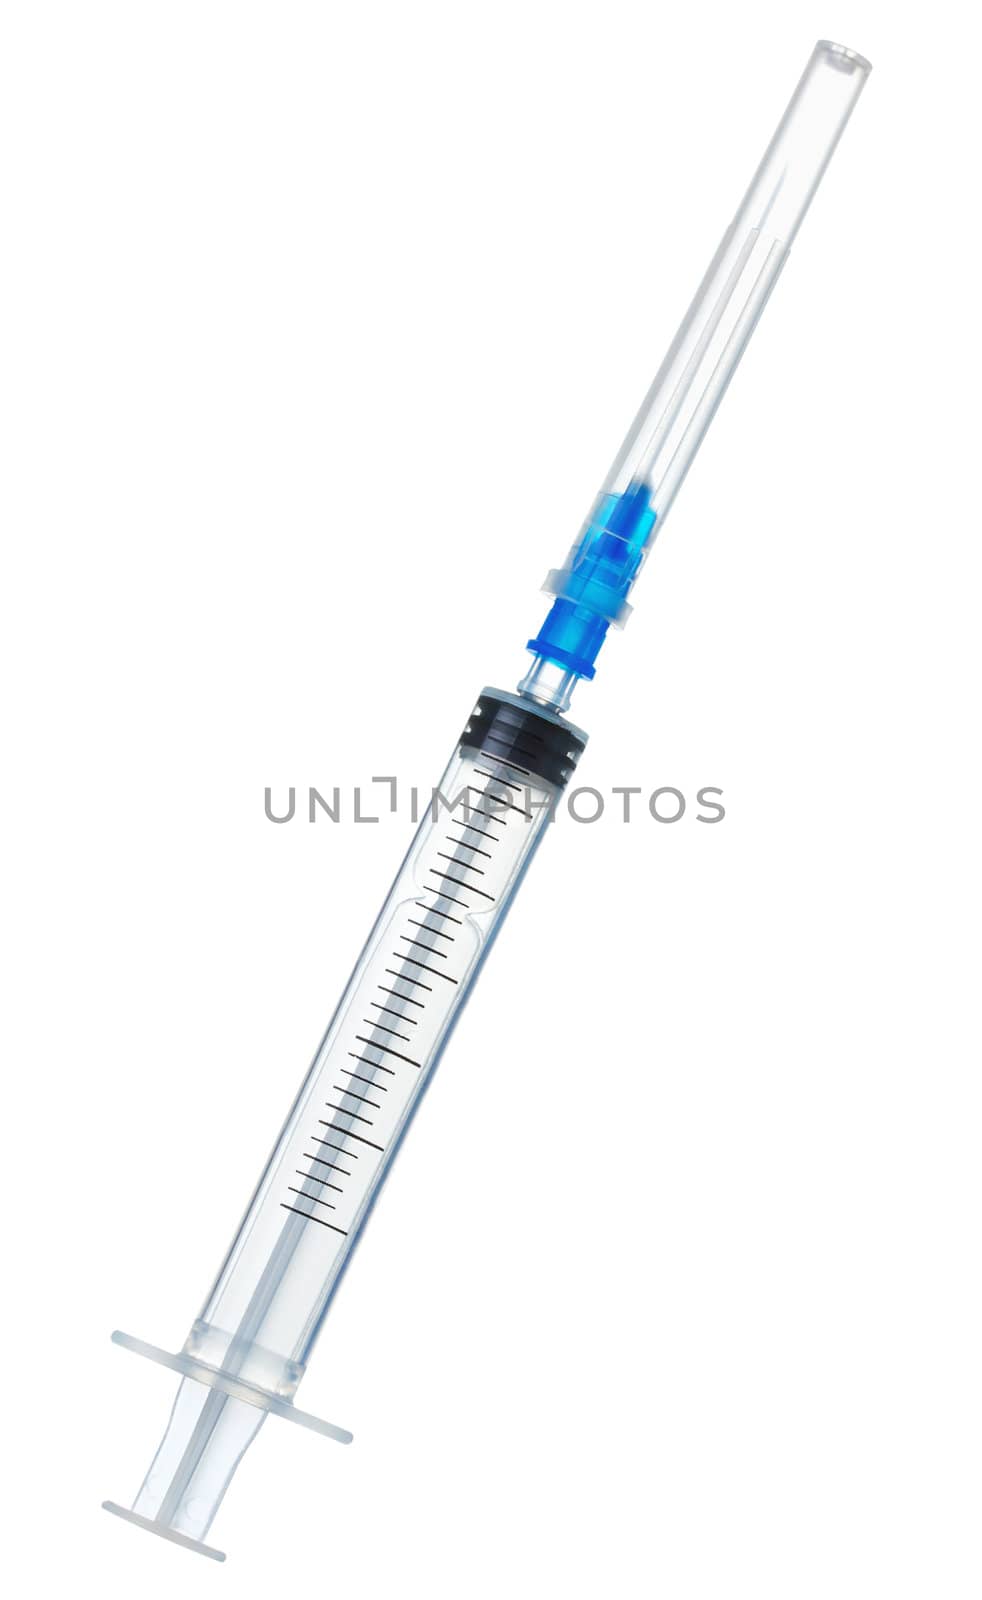 plastic syringe isolated on the white background